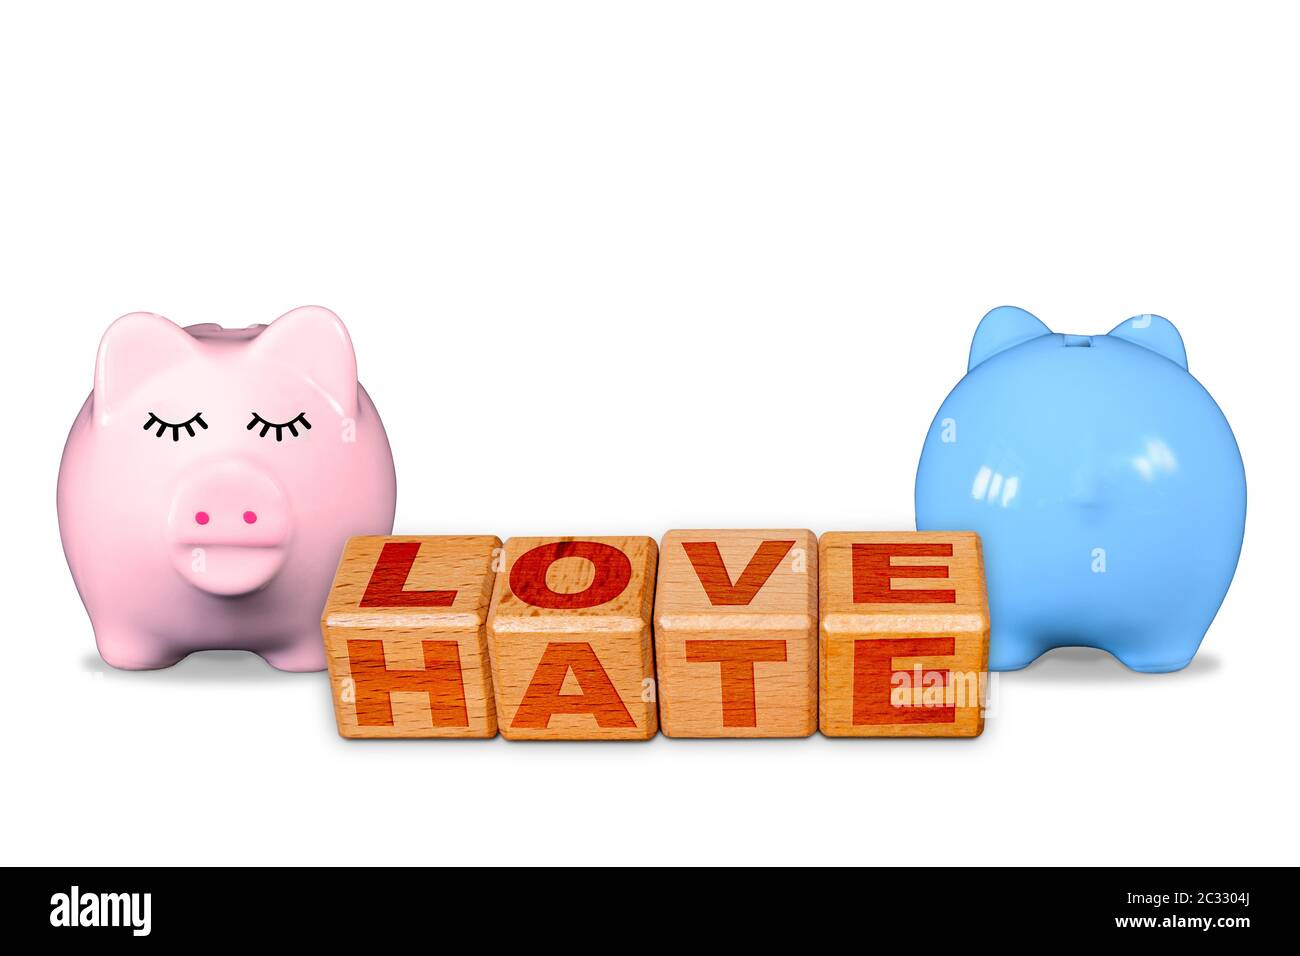 Liebe und Hass auf den gleichen Blöcken, Konzept der Liebe Hass Beziehung mit gegenüber männlichen und weiblichen Sparschwein zeigt kontrastierende emotionale Display. C Stockfoto